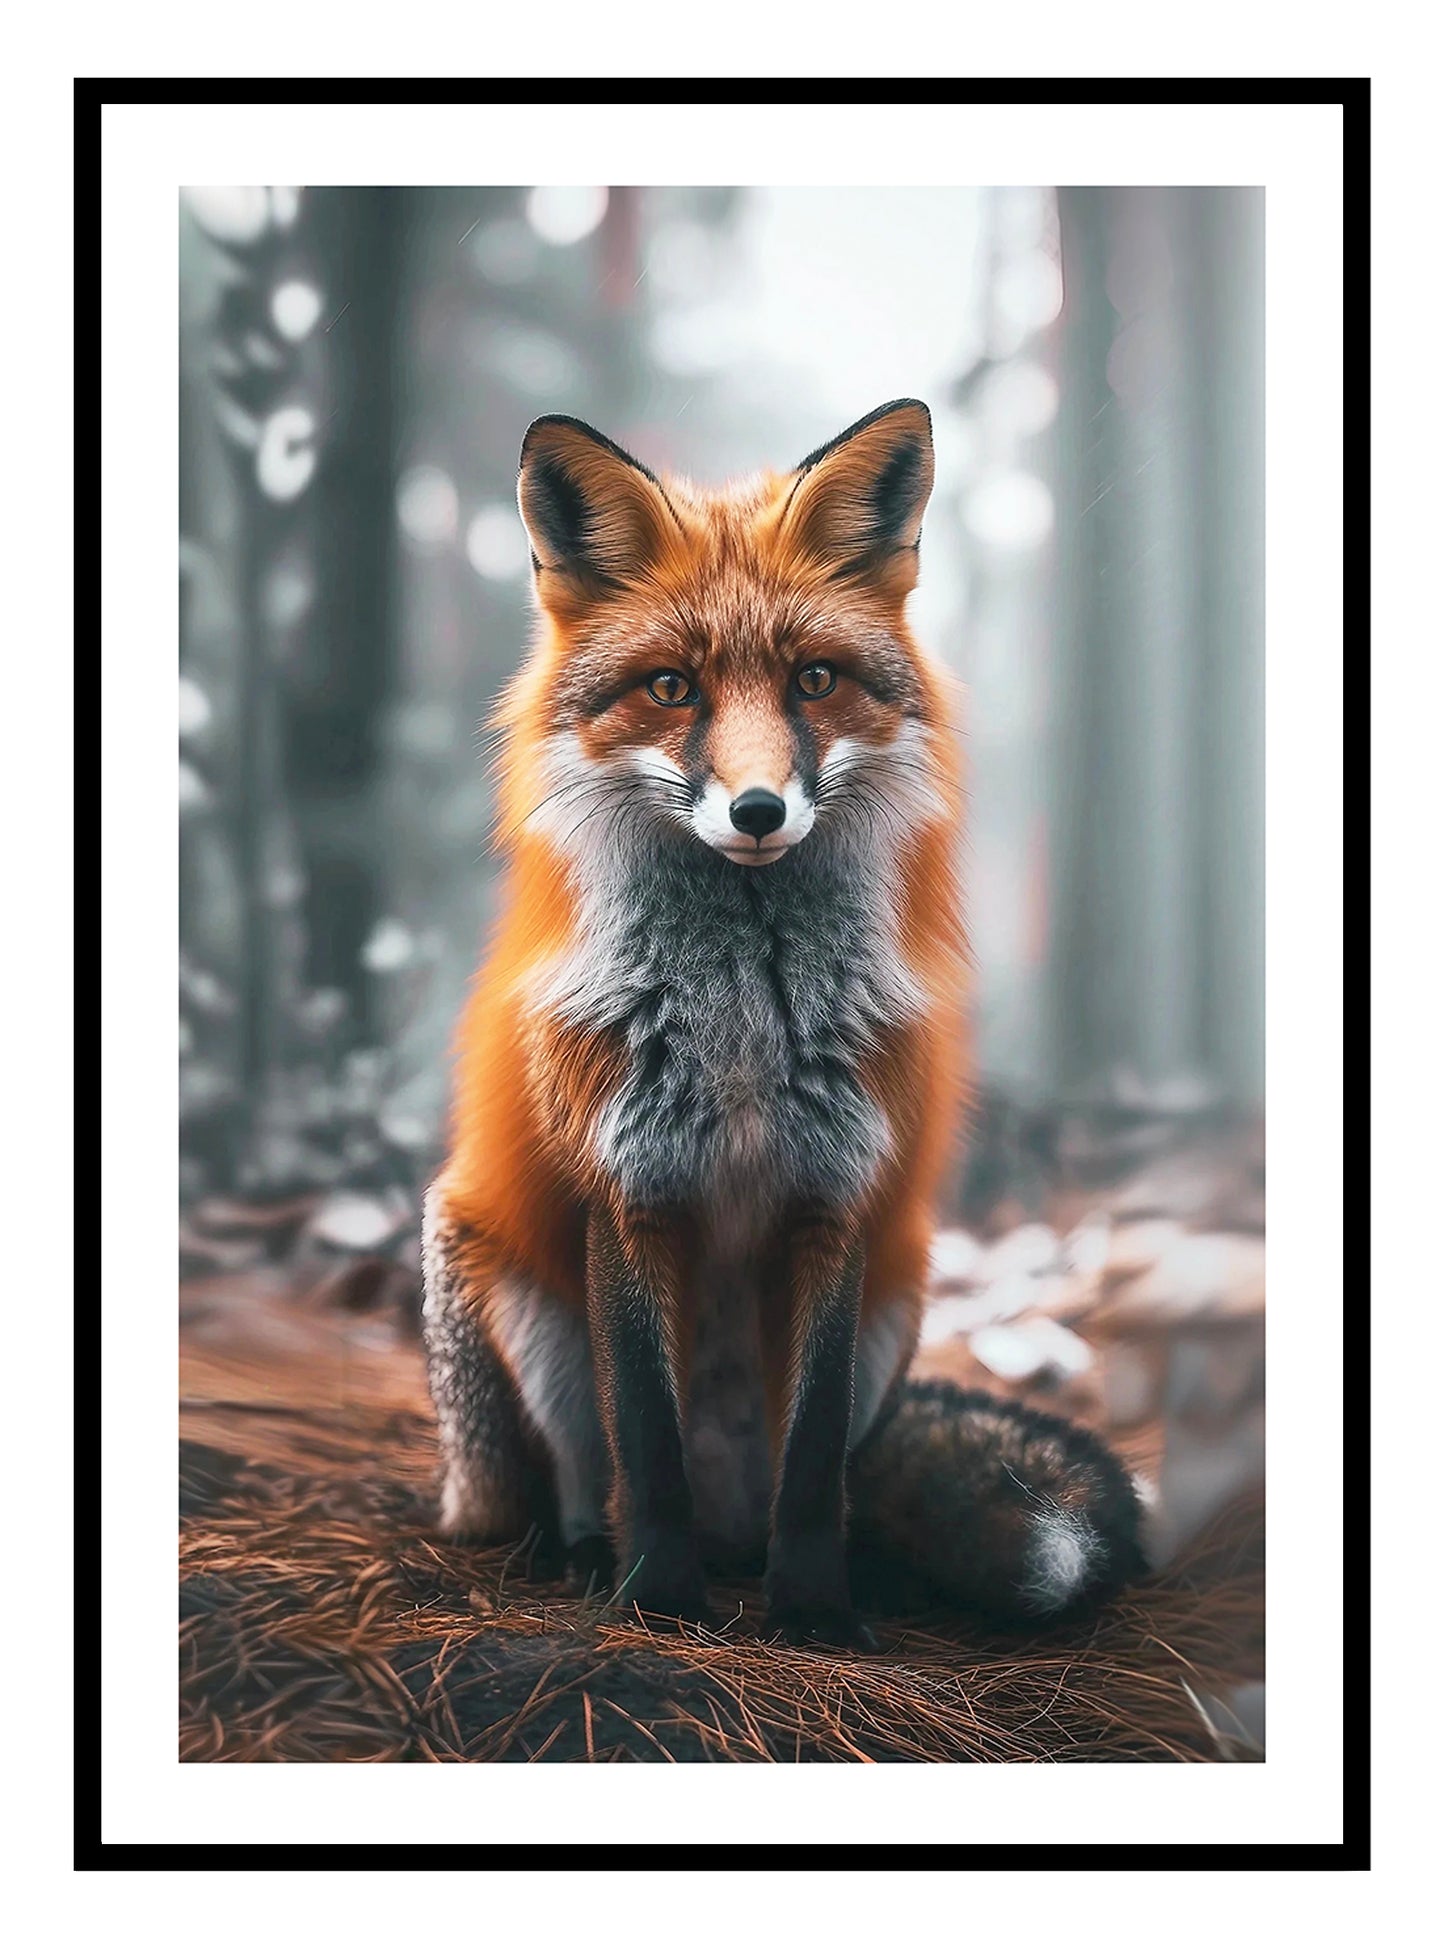 Stampa d'arte della famiglia Fox